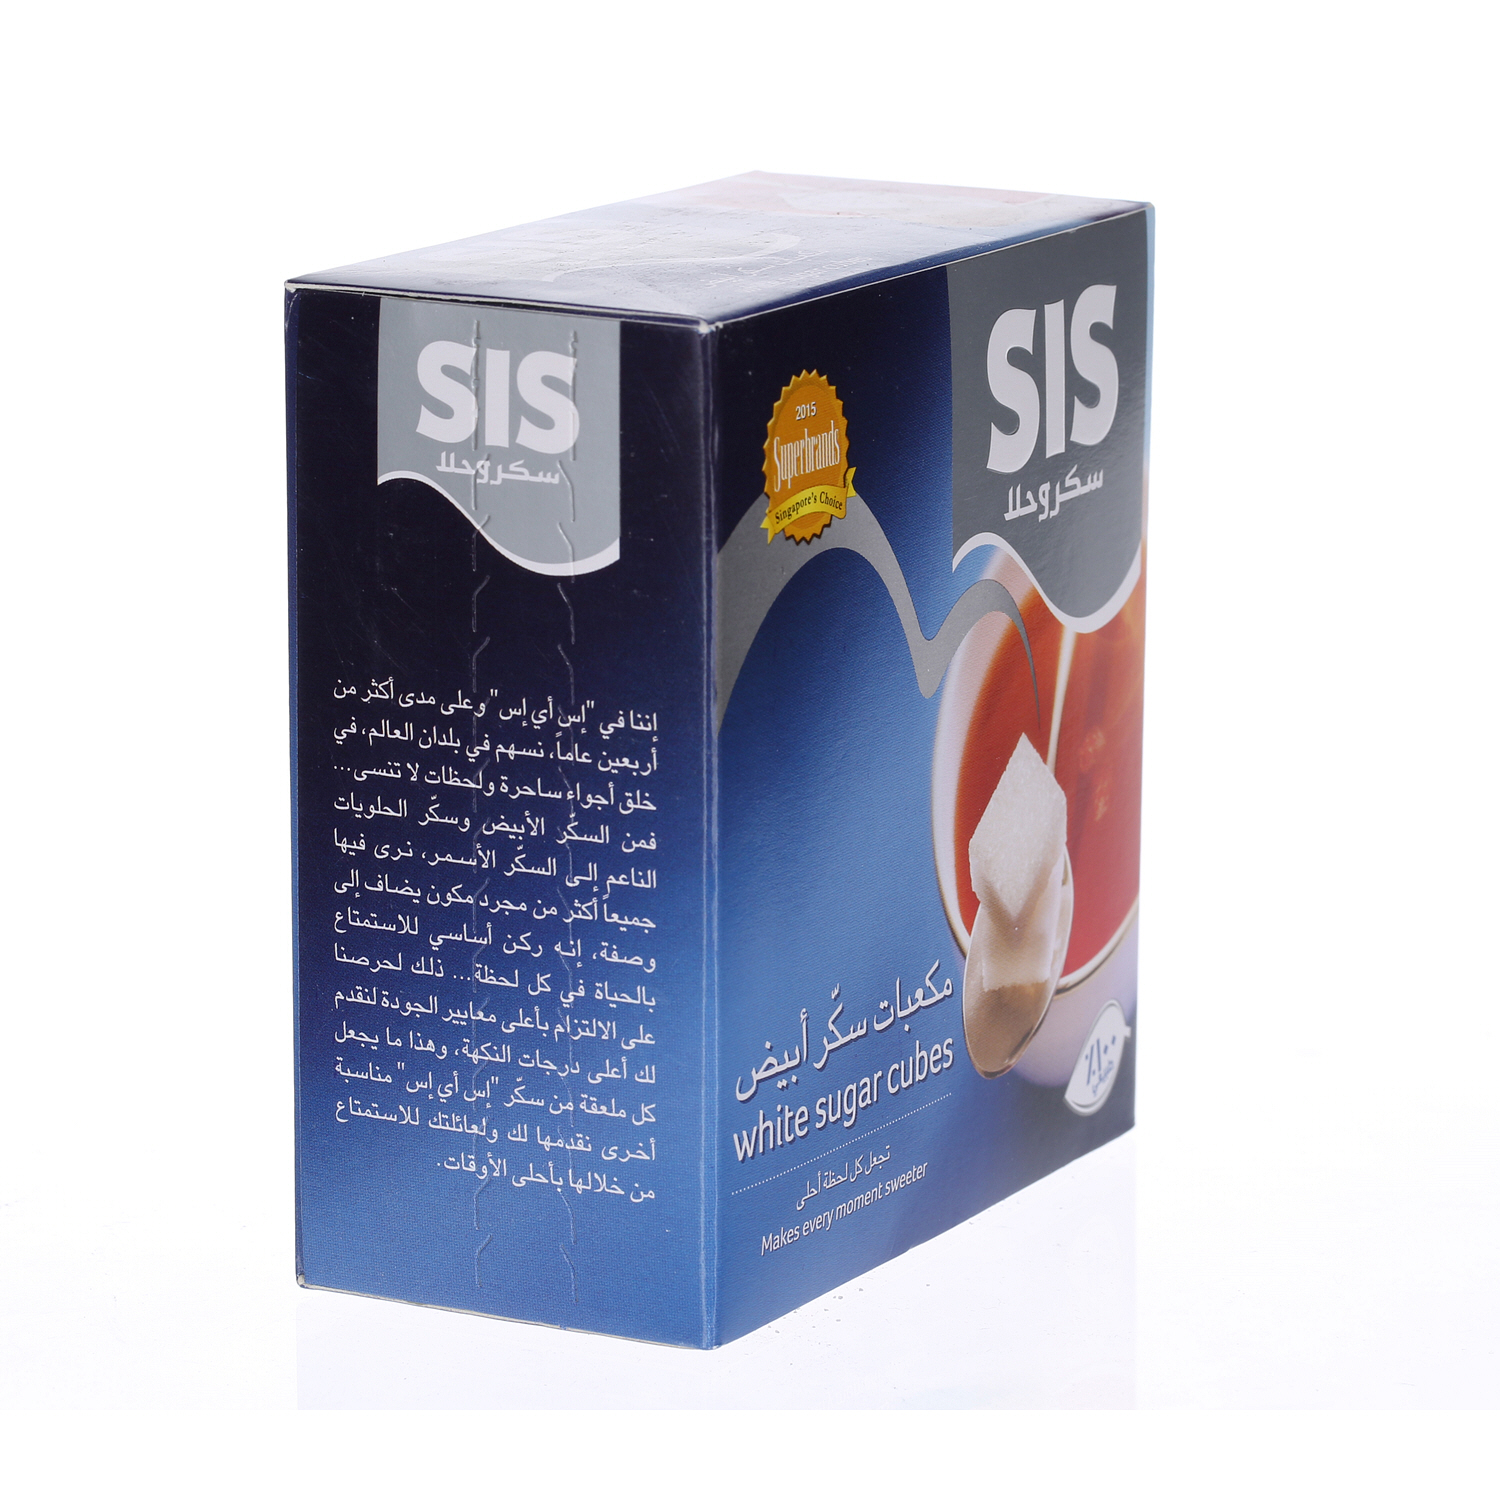 SIS Cube Sugar 450 g